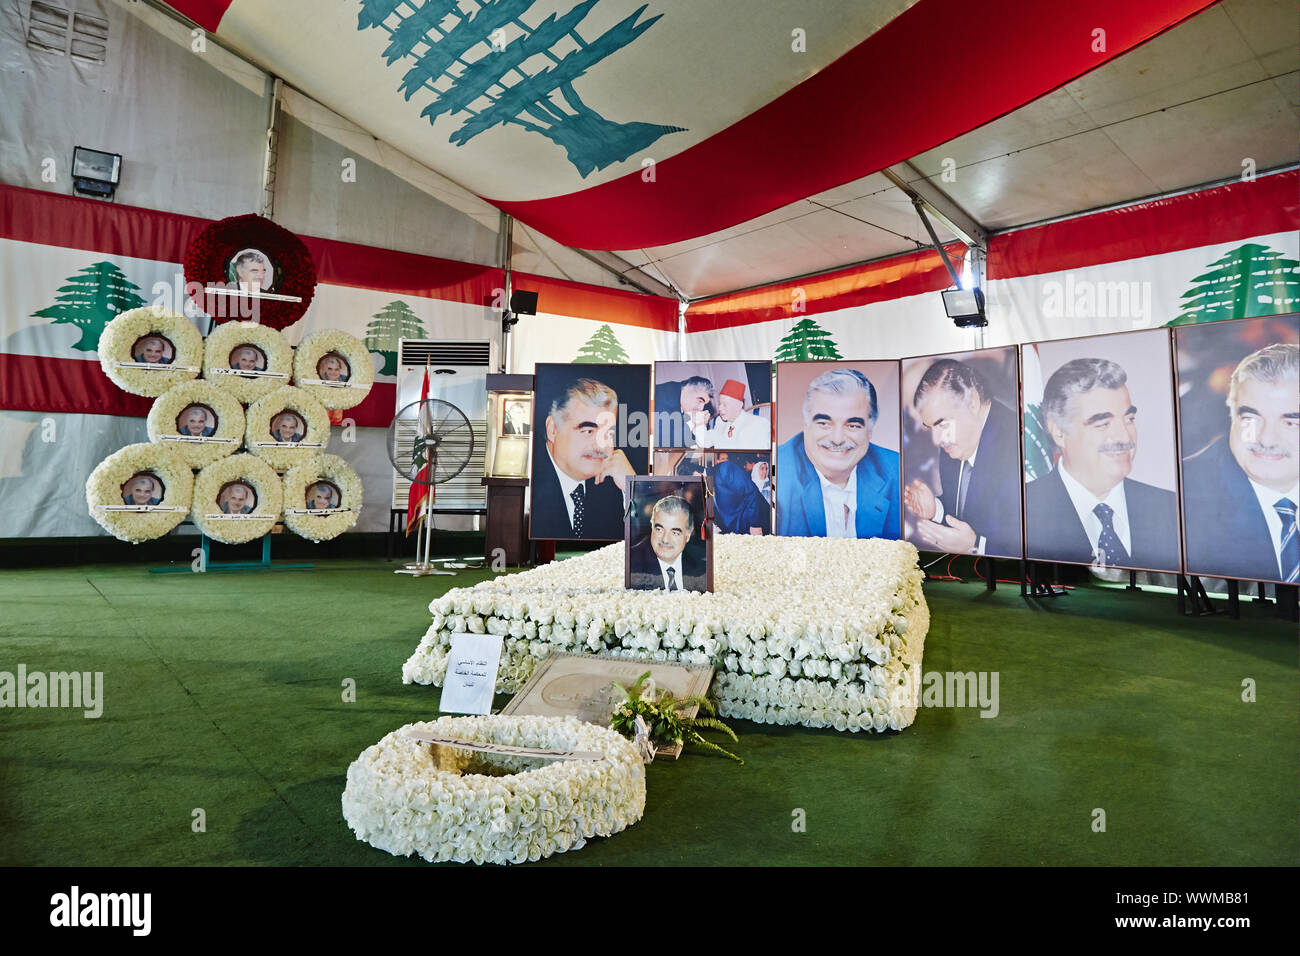 Rafik Hariri grave memorial - Beirut, Lebanon. Stock Photo